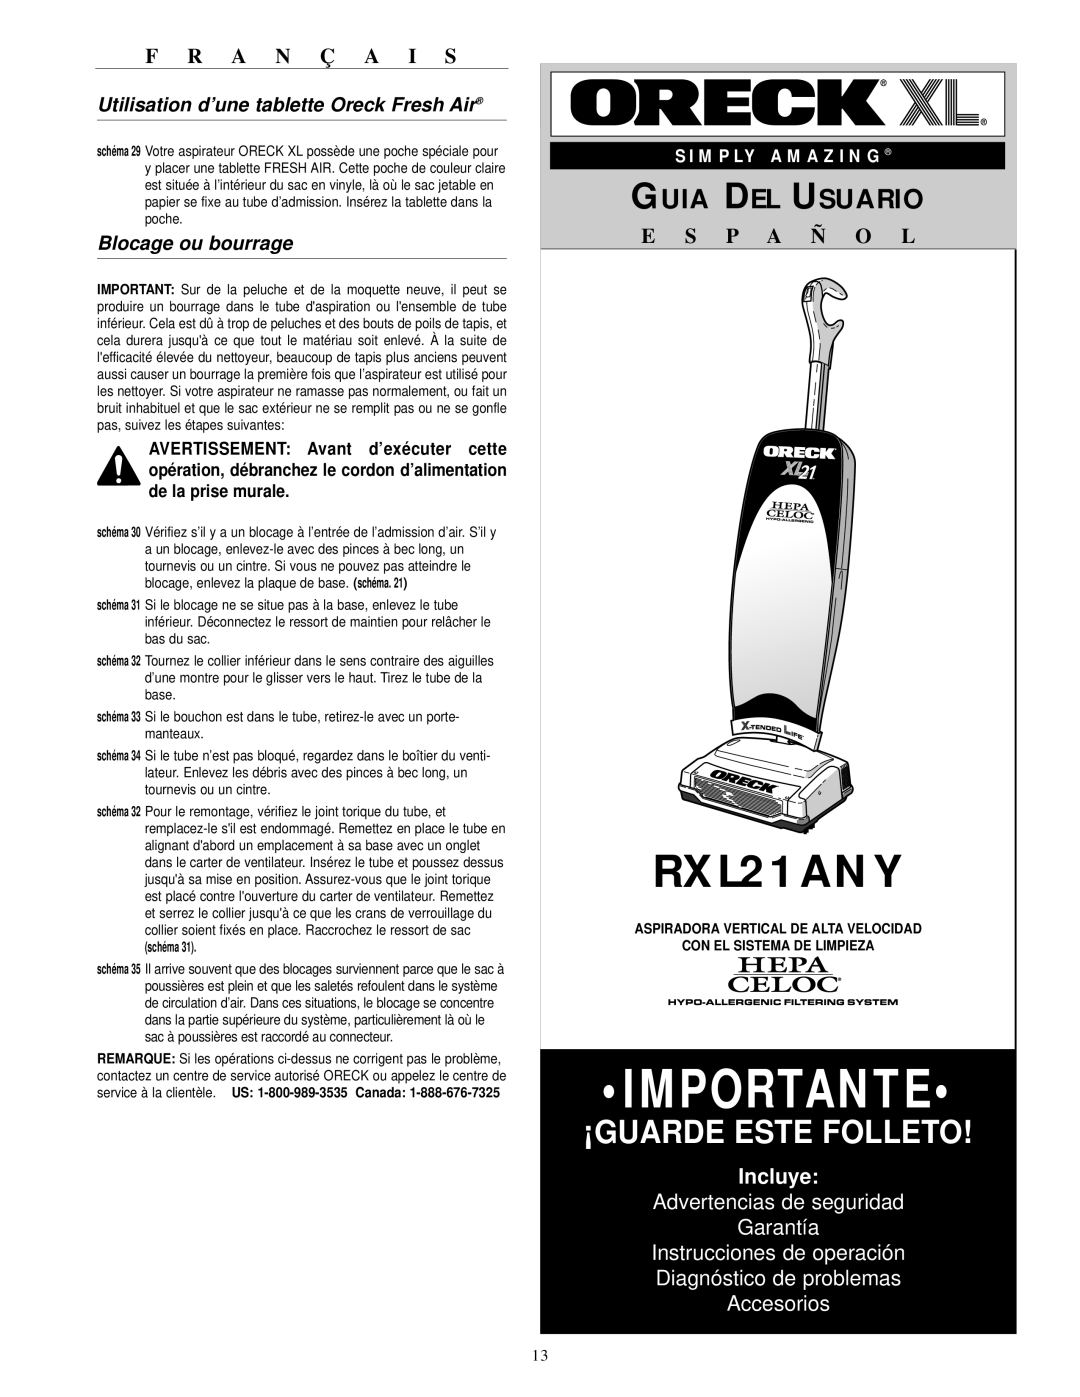 Oreck RXL21ANY Importante, ¡Guarde Este Folleto, Guia Del Usuario, E S P A Ñ O L, Incluye, Instrucciones de operación 